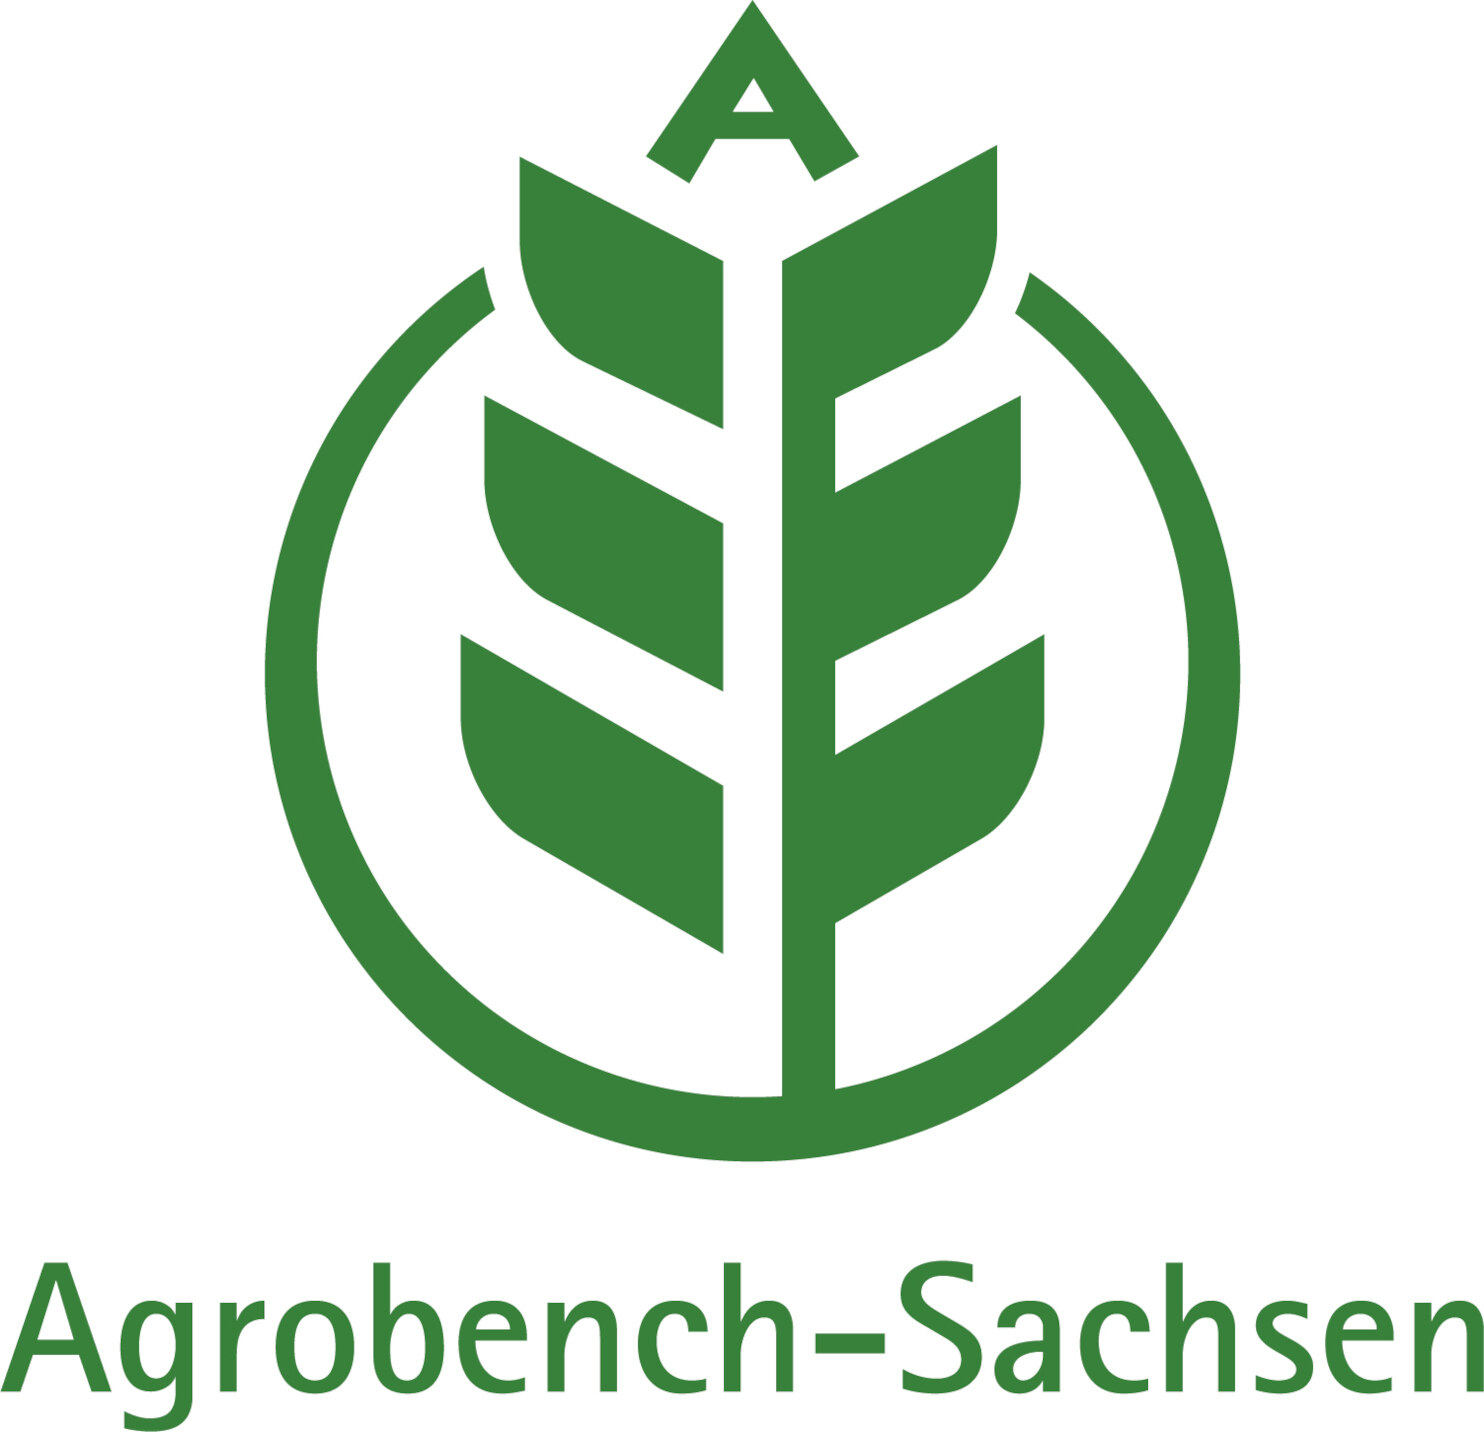 Das Logo für Agrobench-Sachsen besteht aus einer Getreideähre, die in der Spitze den Buchstaben A enthält und von einem Kreis umgeben ist. Darunter befindet sich der Schriftzug Agrobench-Sachsen. Die Farbe des Logos ist grün auf weißem Grund.